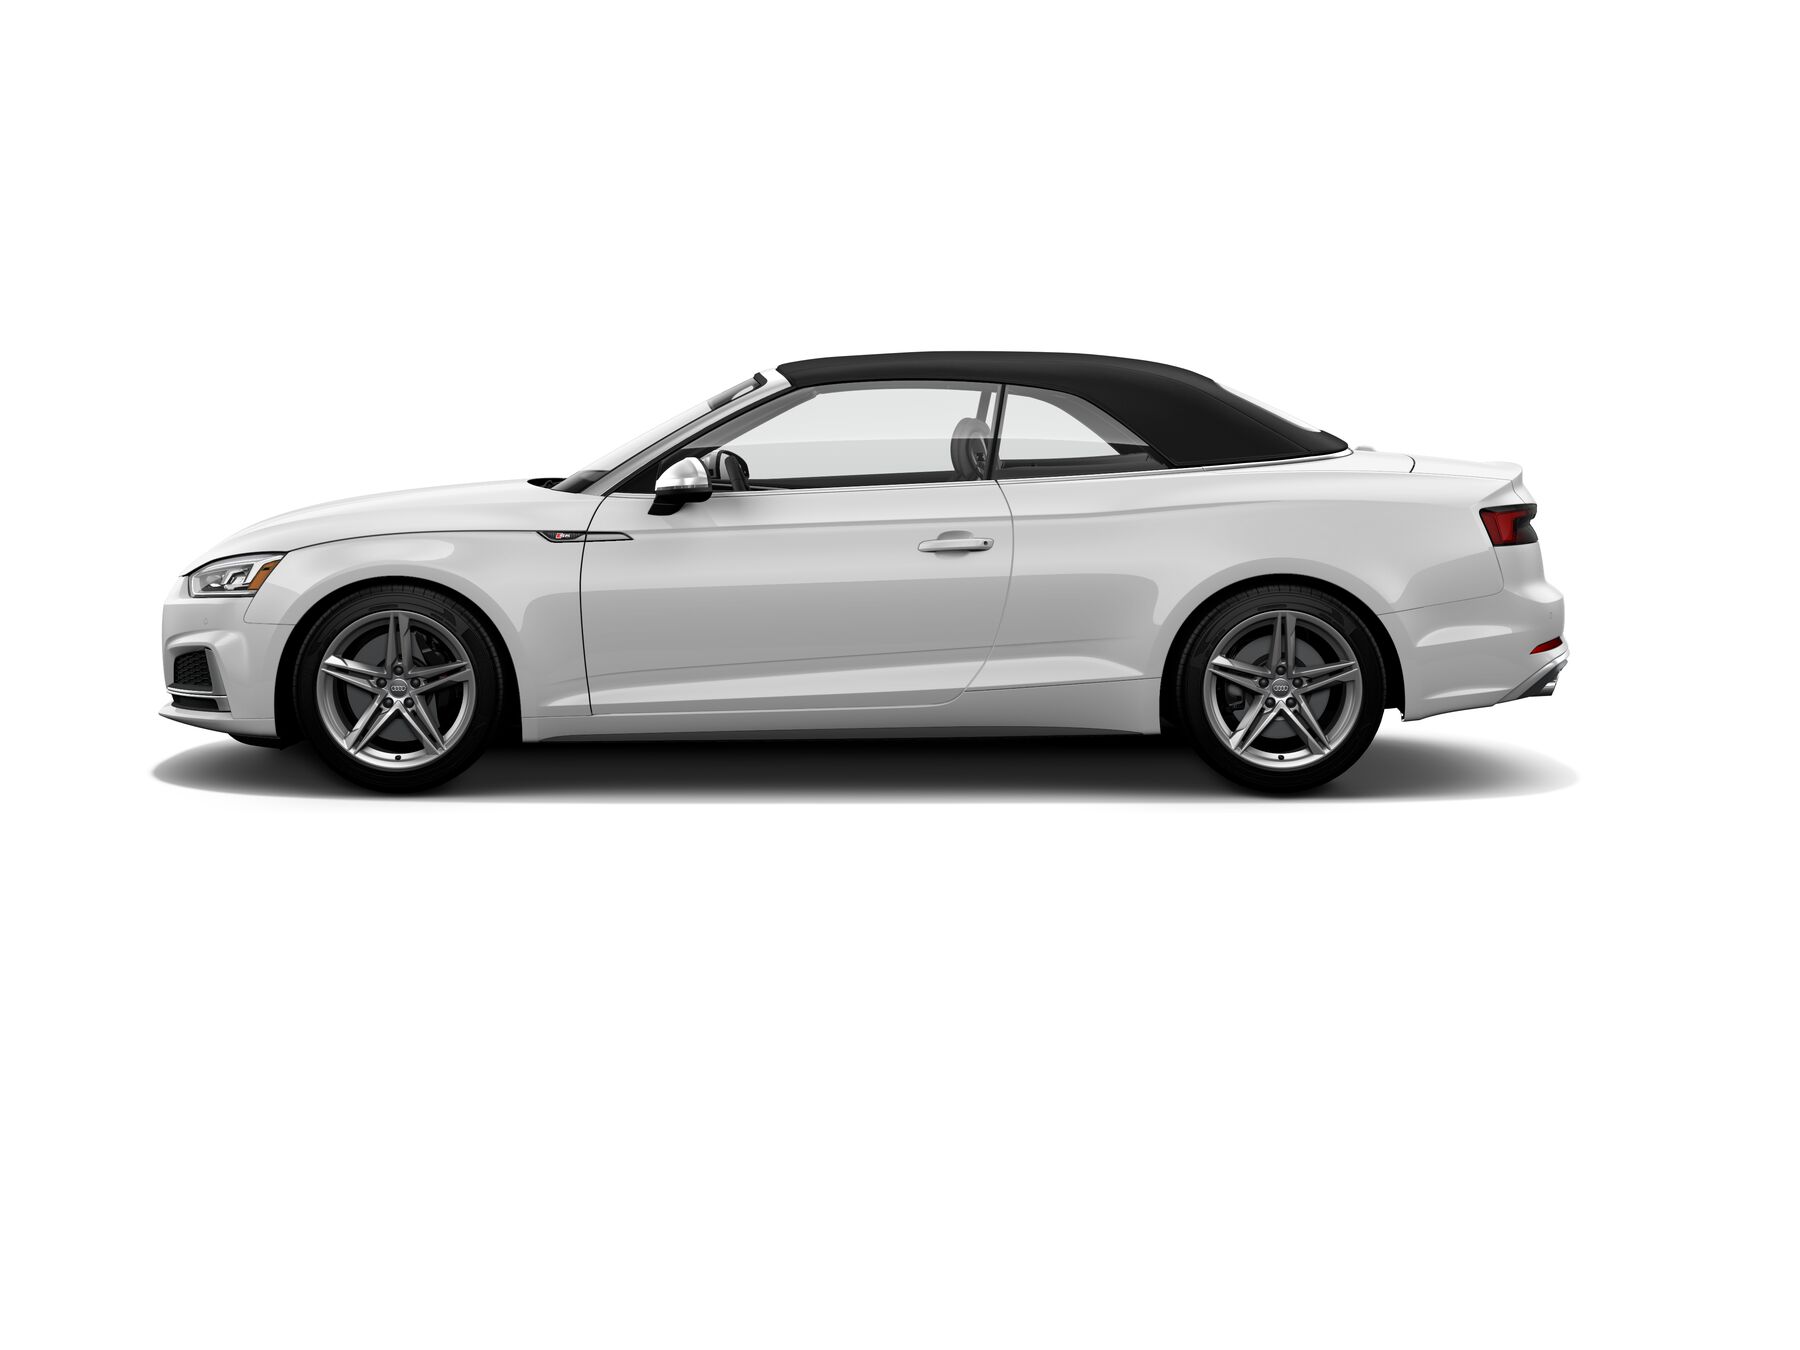 Audi S5 Cabriolet Premium Plus side view